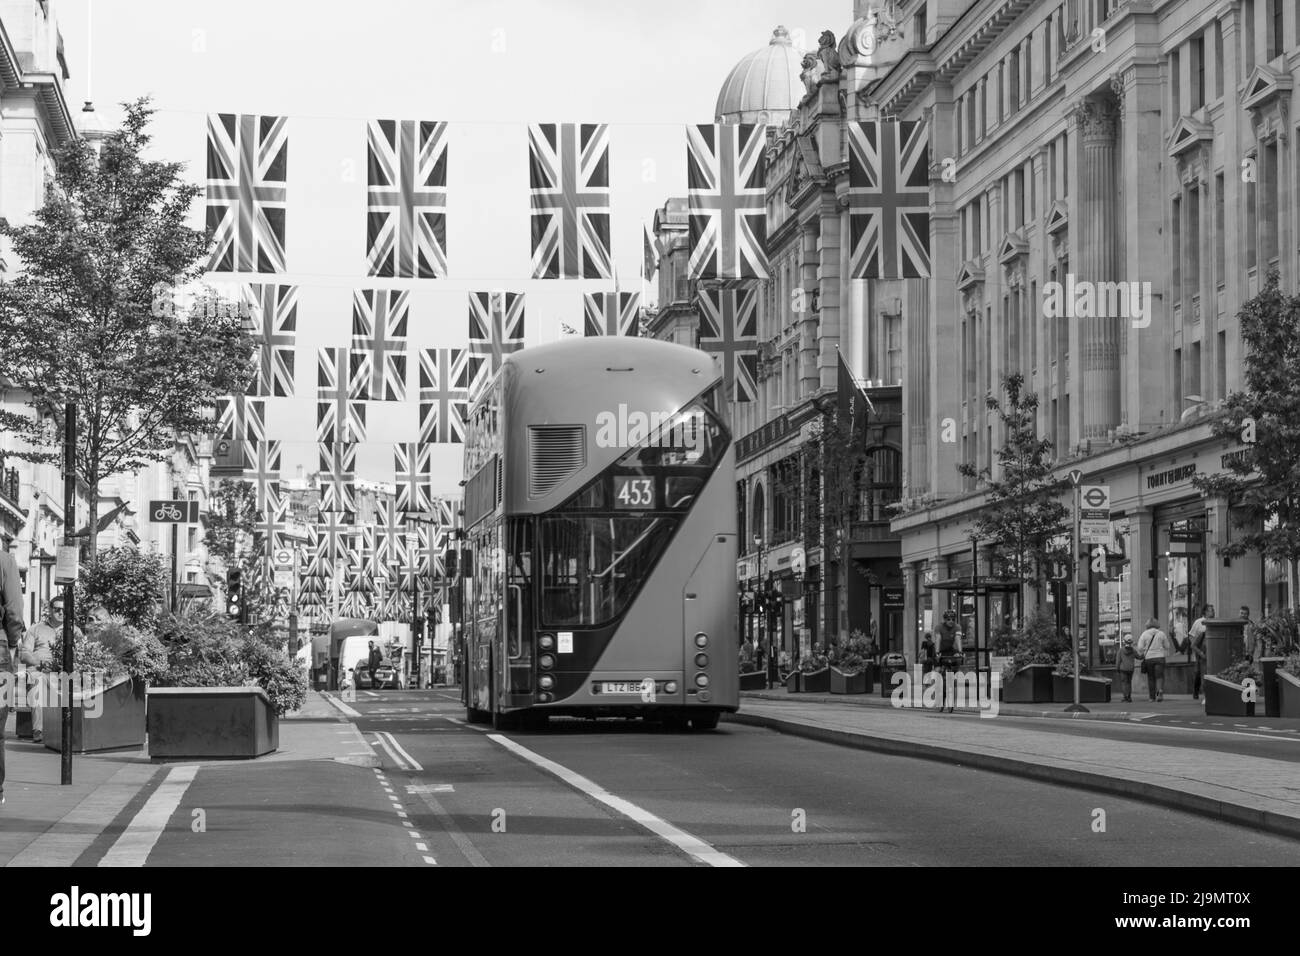 Une vue sur Regent Street avec la banderole et les drapeaux prêts pour le Jubilé de platine de la Reine vu en monochrome, pris le 21st mai 2022. Banque D'Images